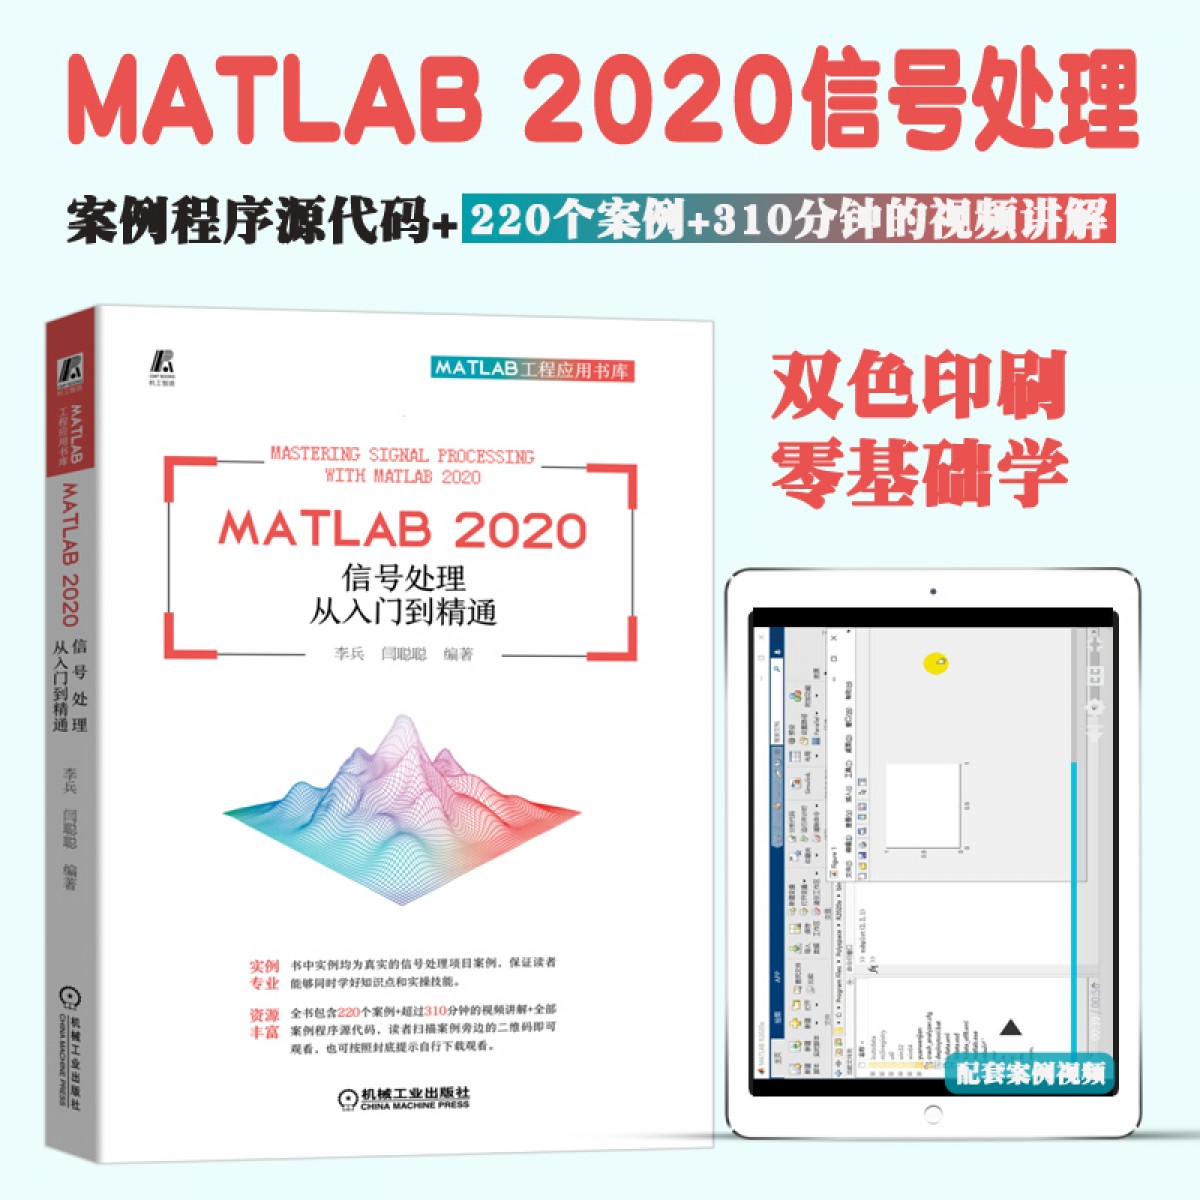 正版现货MATLAB 2020 信号处理从入门到精通 MATLAB软件教程书基础入门数字信号处理理论与方法MATLAB软件在信号处理中的应用【MATLAB2020】 信号处理教程当前正在查看的商品